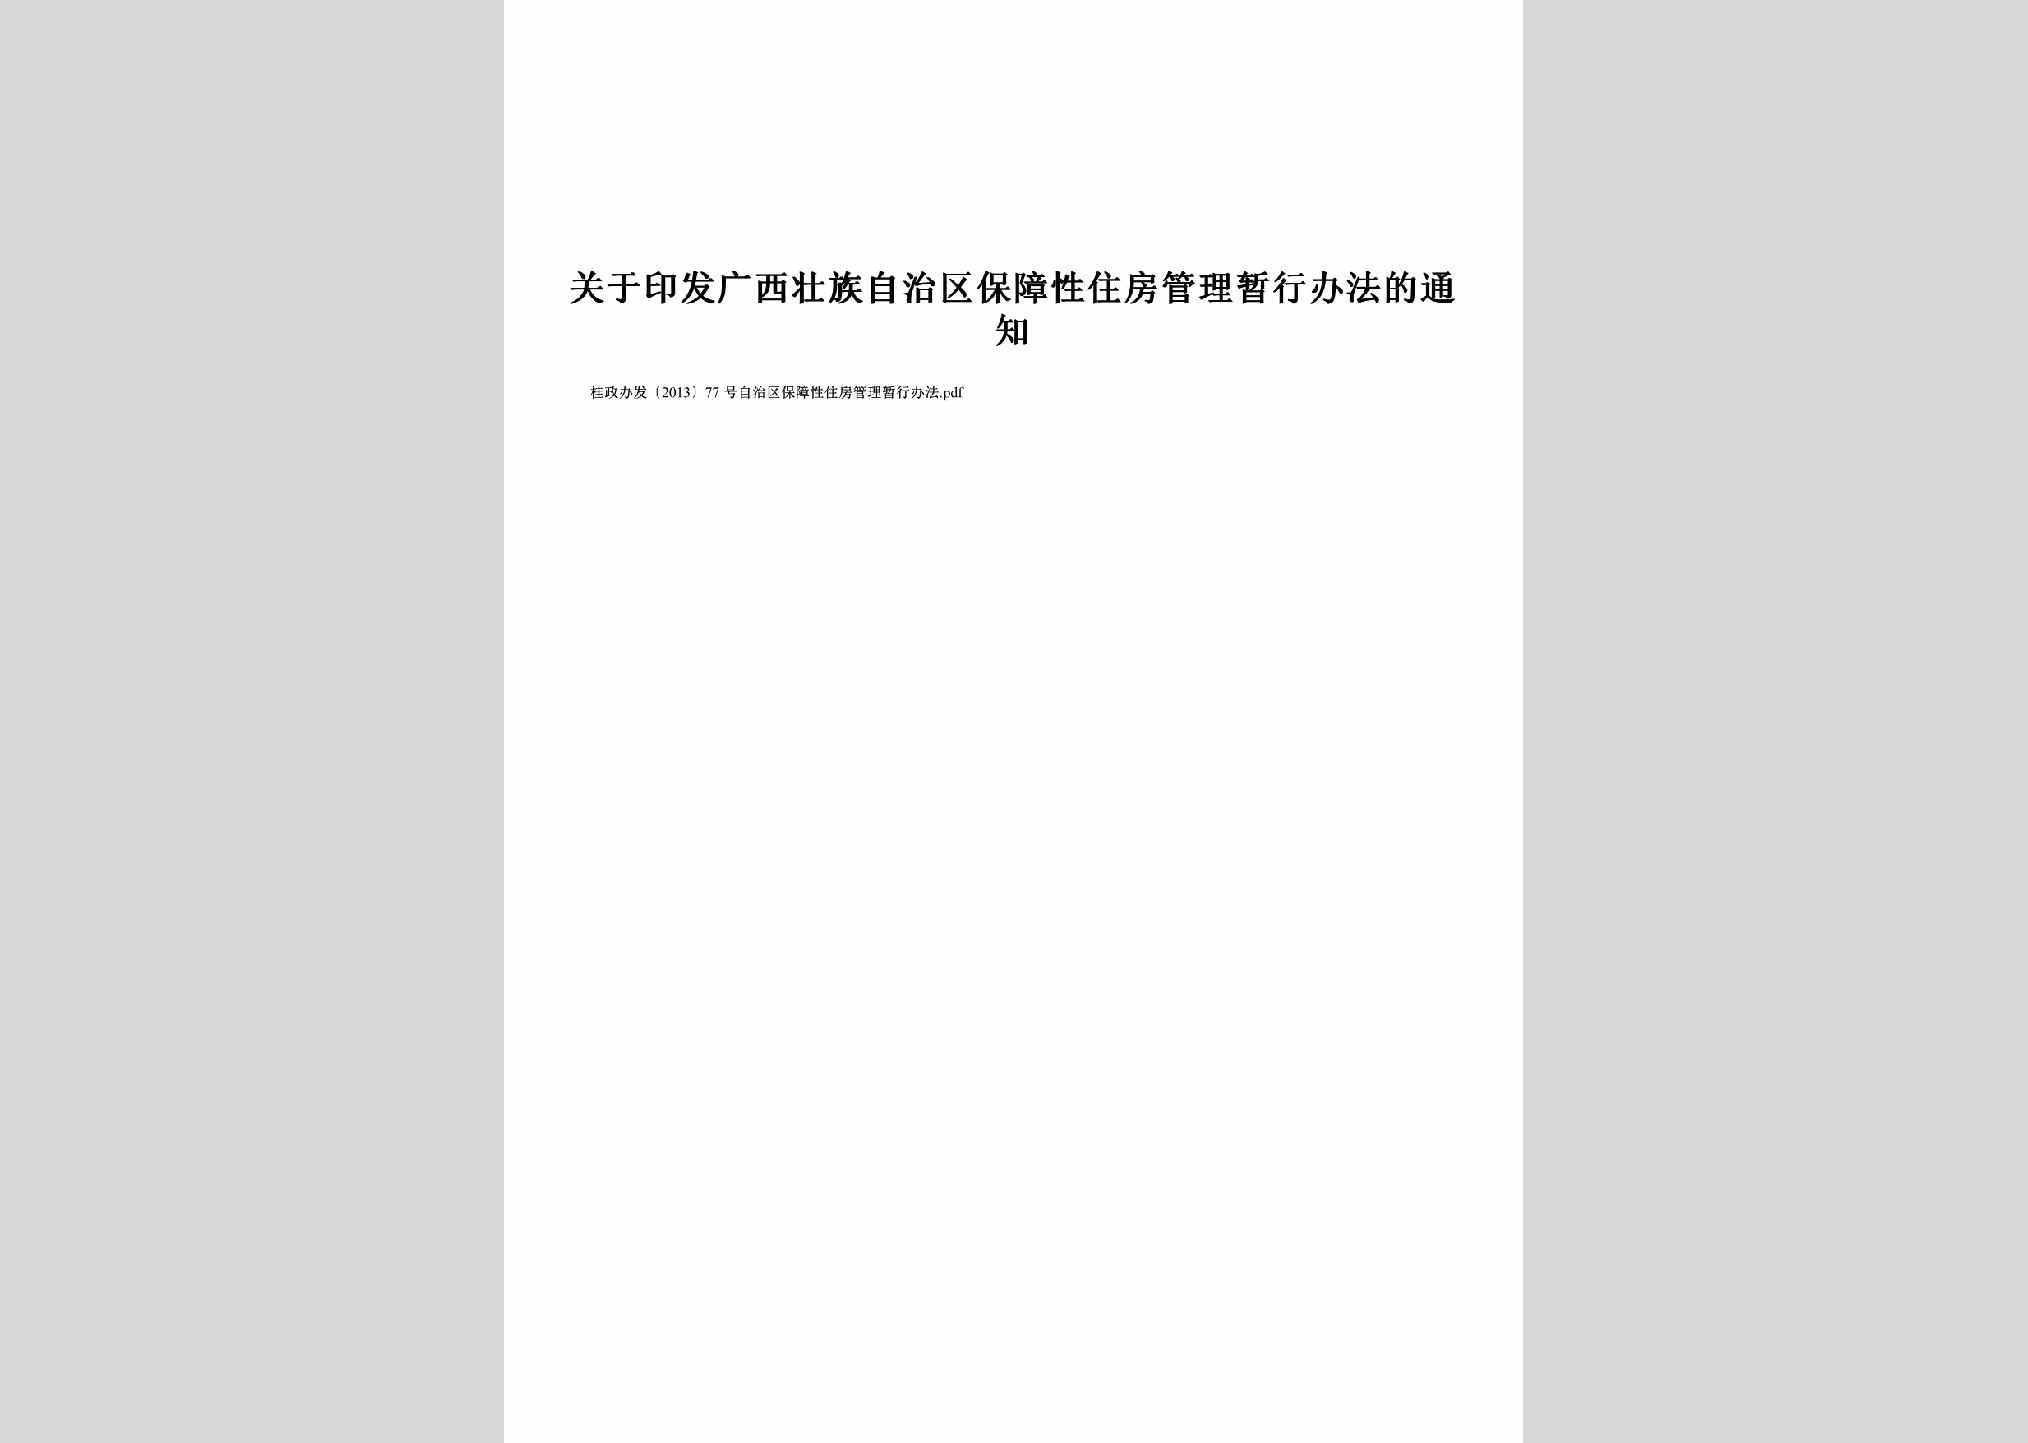 桂政办发[2013]77号：关于印发广西壮族自治区保障性住房管理暂行办法的通知